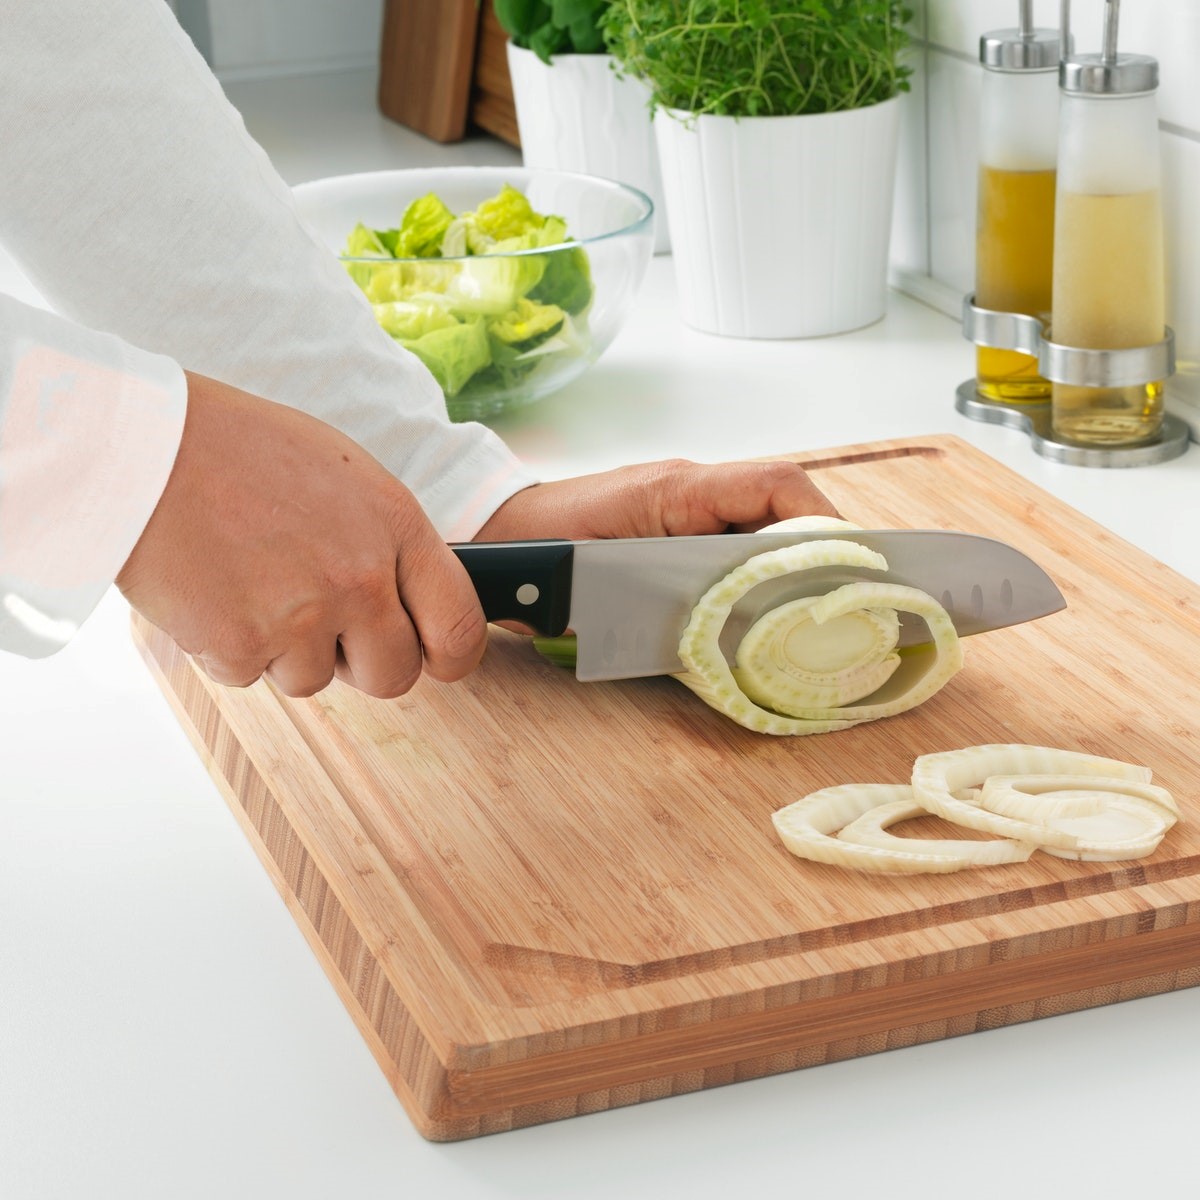 刀具 菜刀 剁肉刀 廚刀 刀架 專業廚刀 Ikea線上購物